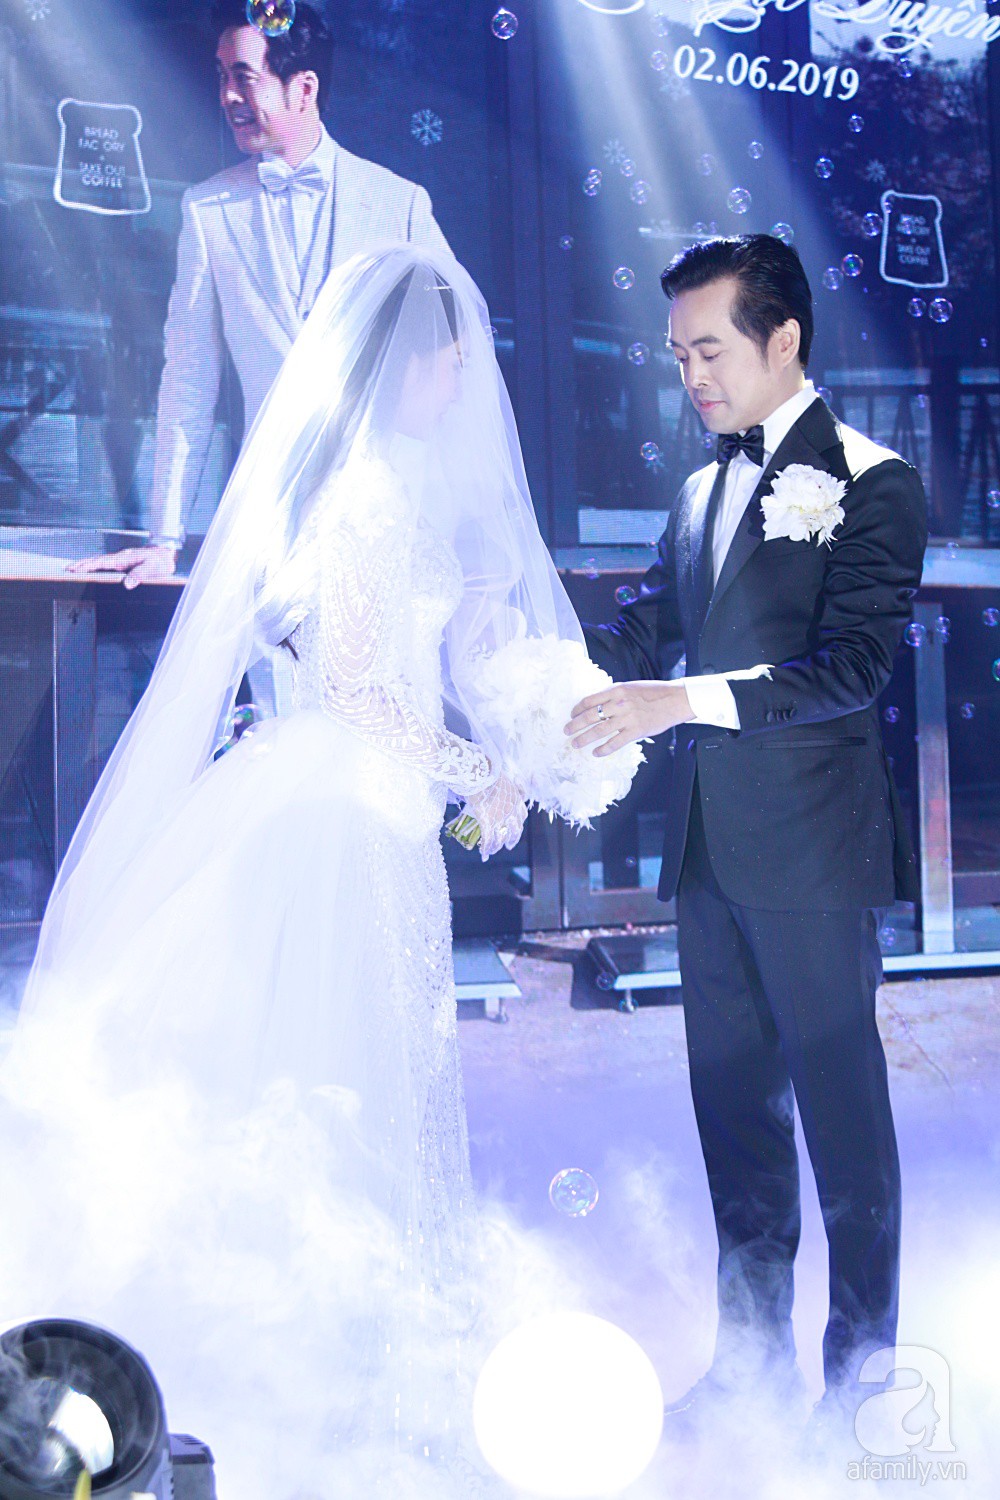 Tiệc cưới chính thức bắt đầu, cô dâu Sara Lưu âu yếm lau nhẹ vết son của mình trên môi chú rể Dương Khắc Linh-8